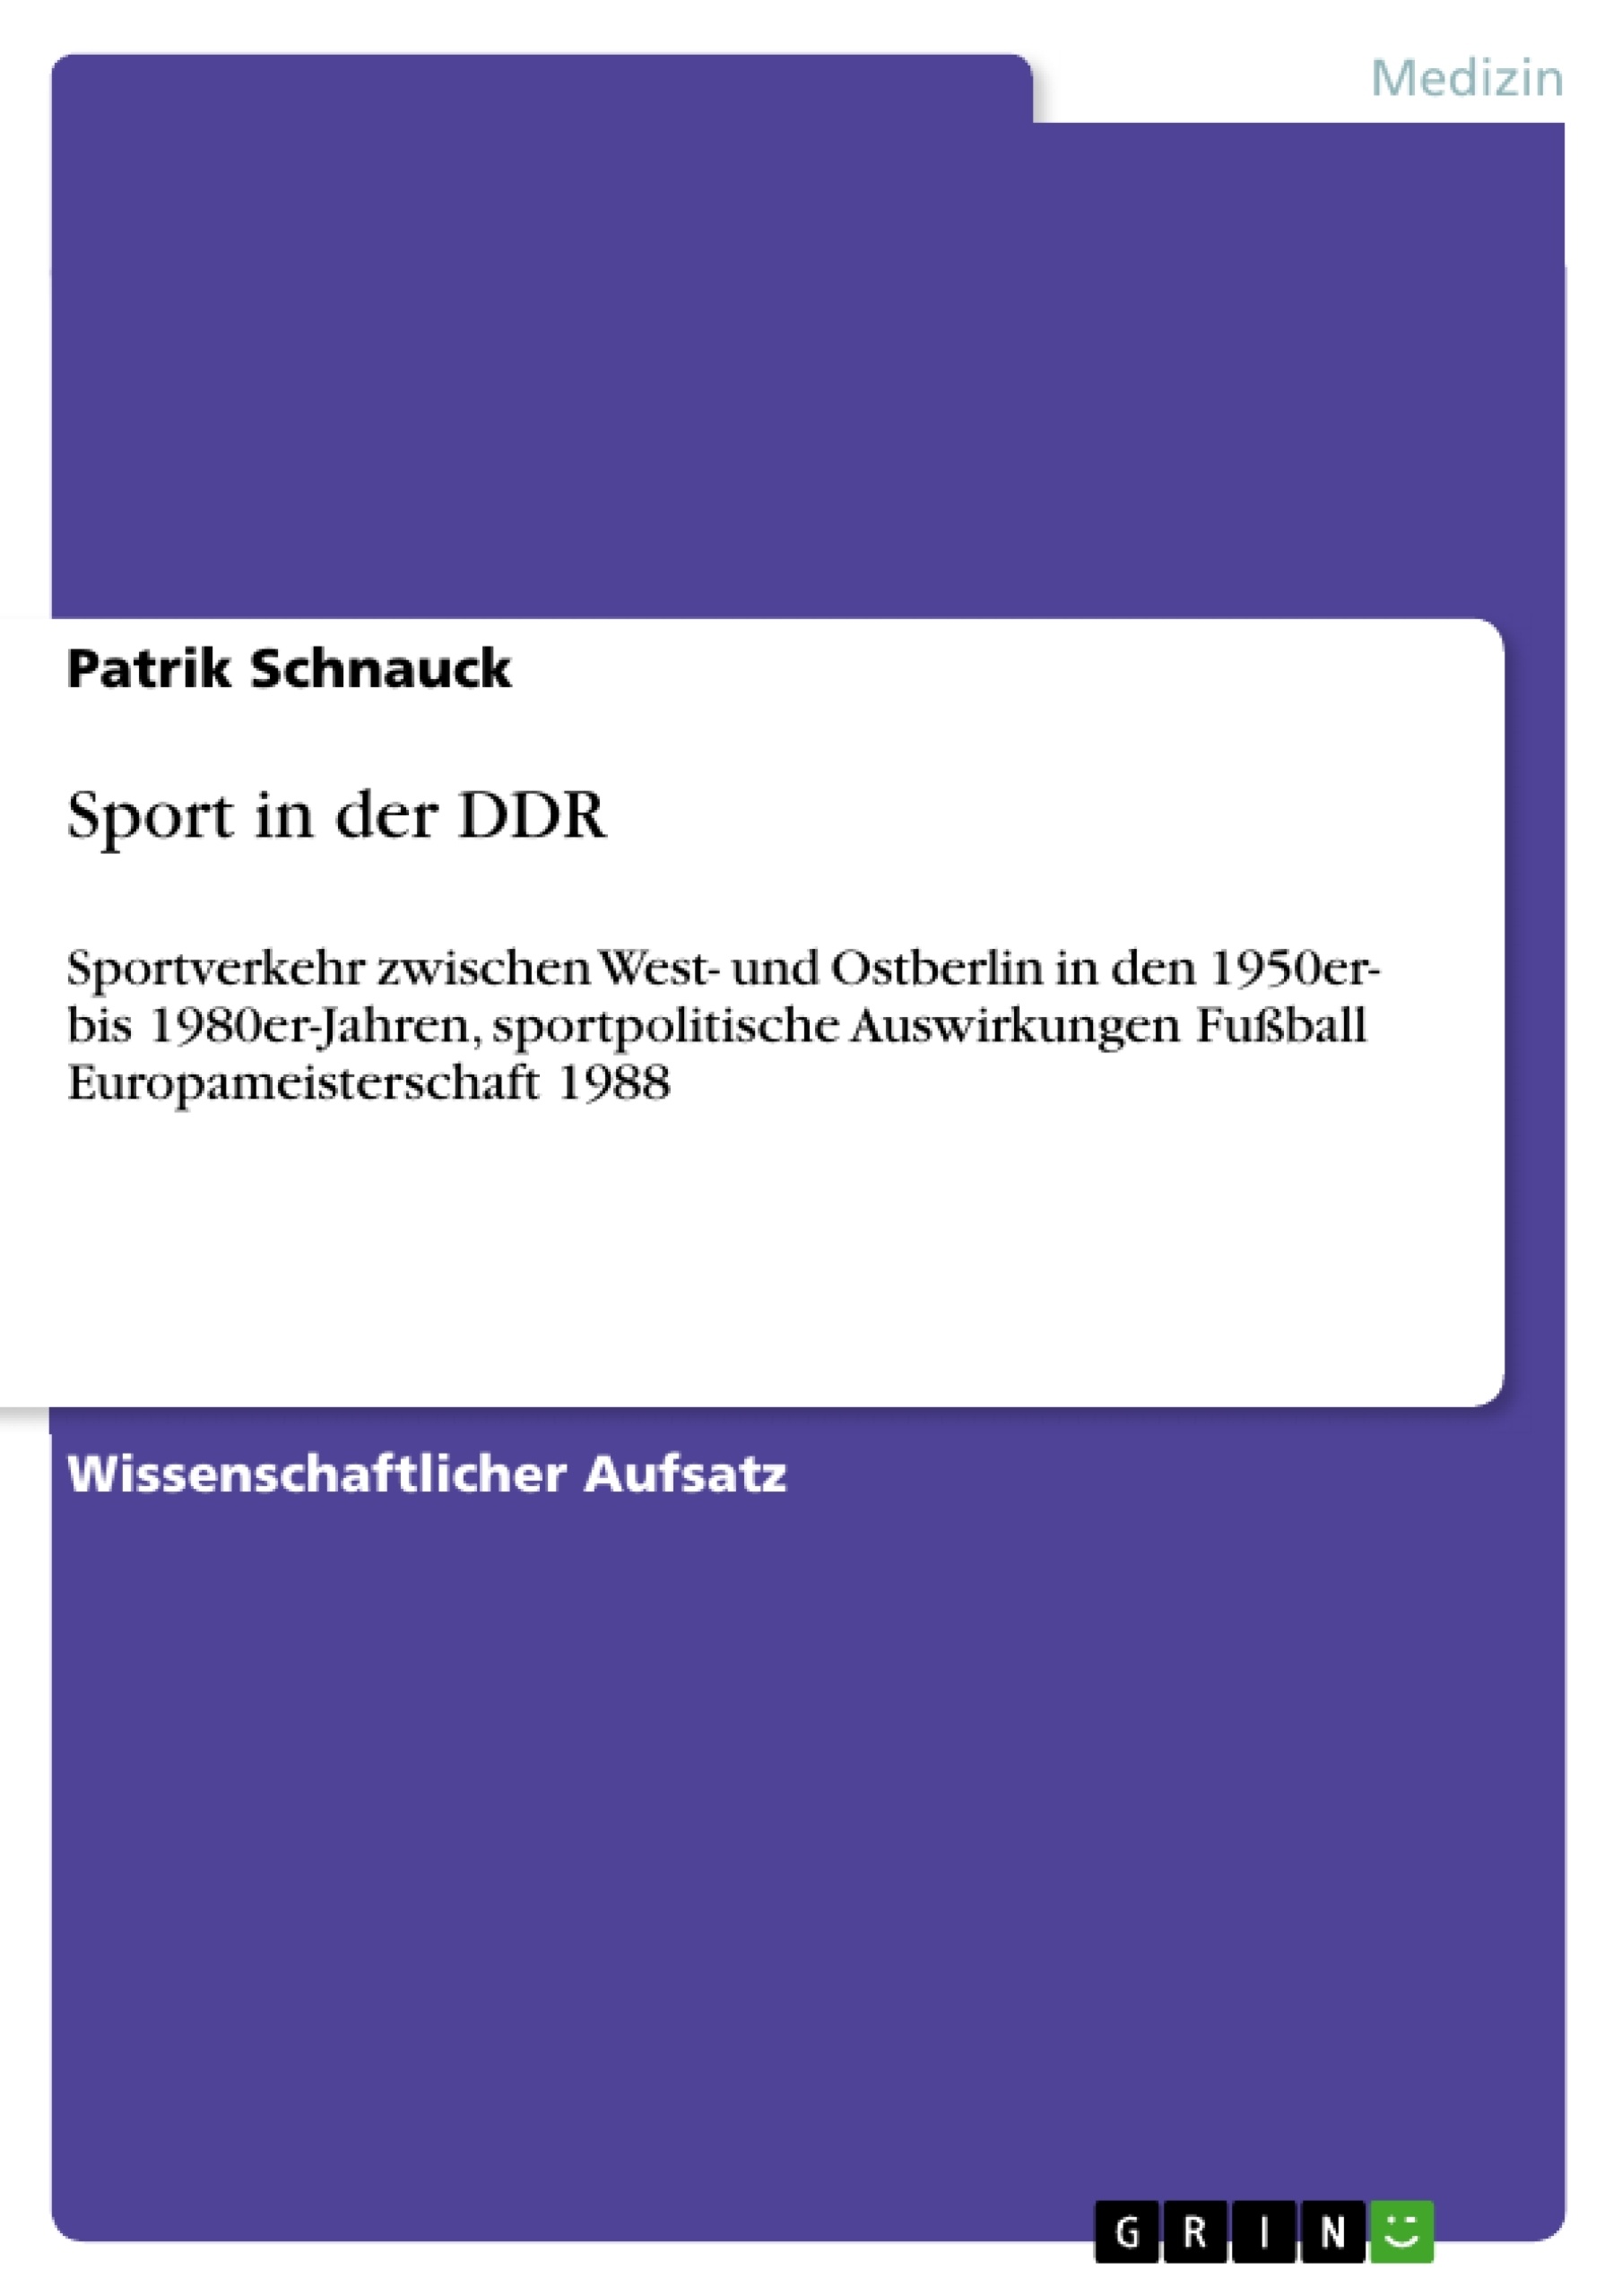 Title: Sport in der DDR